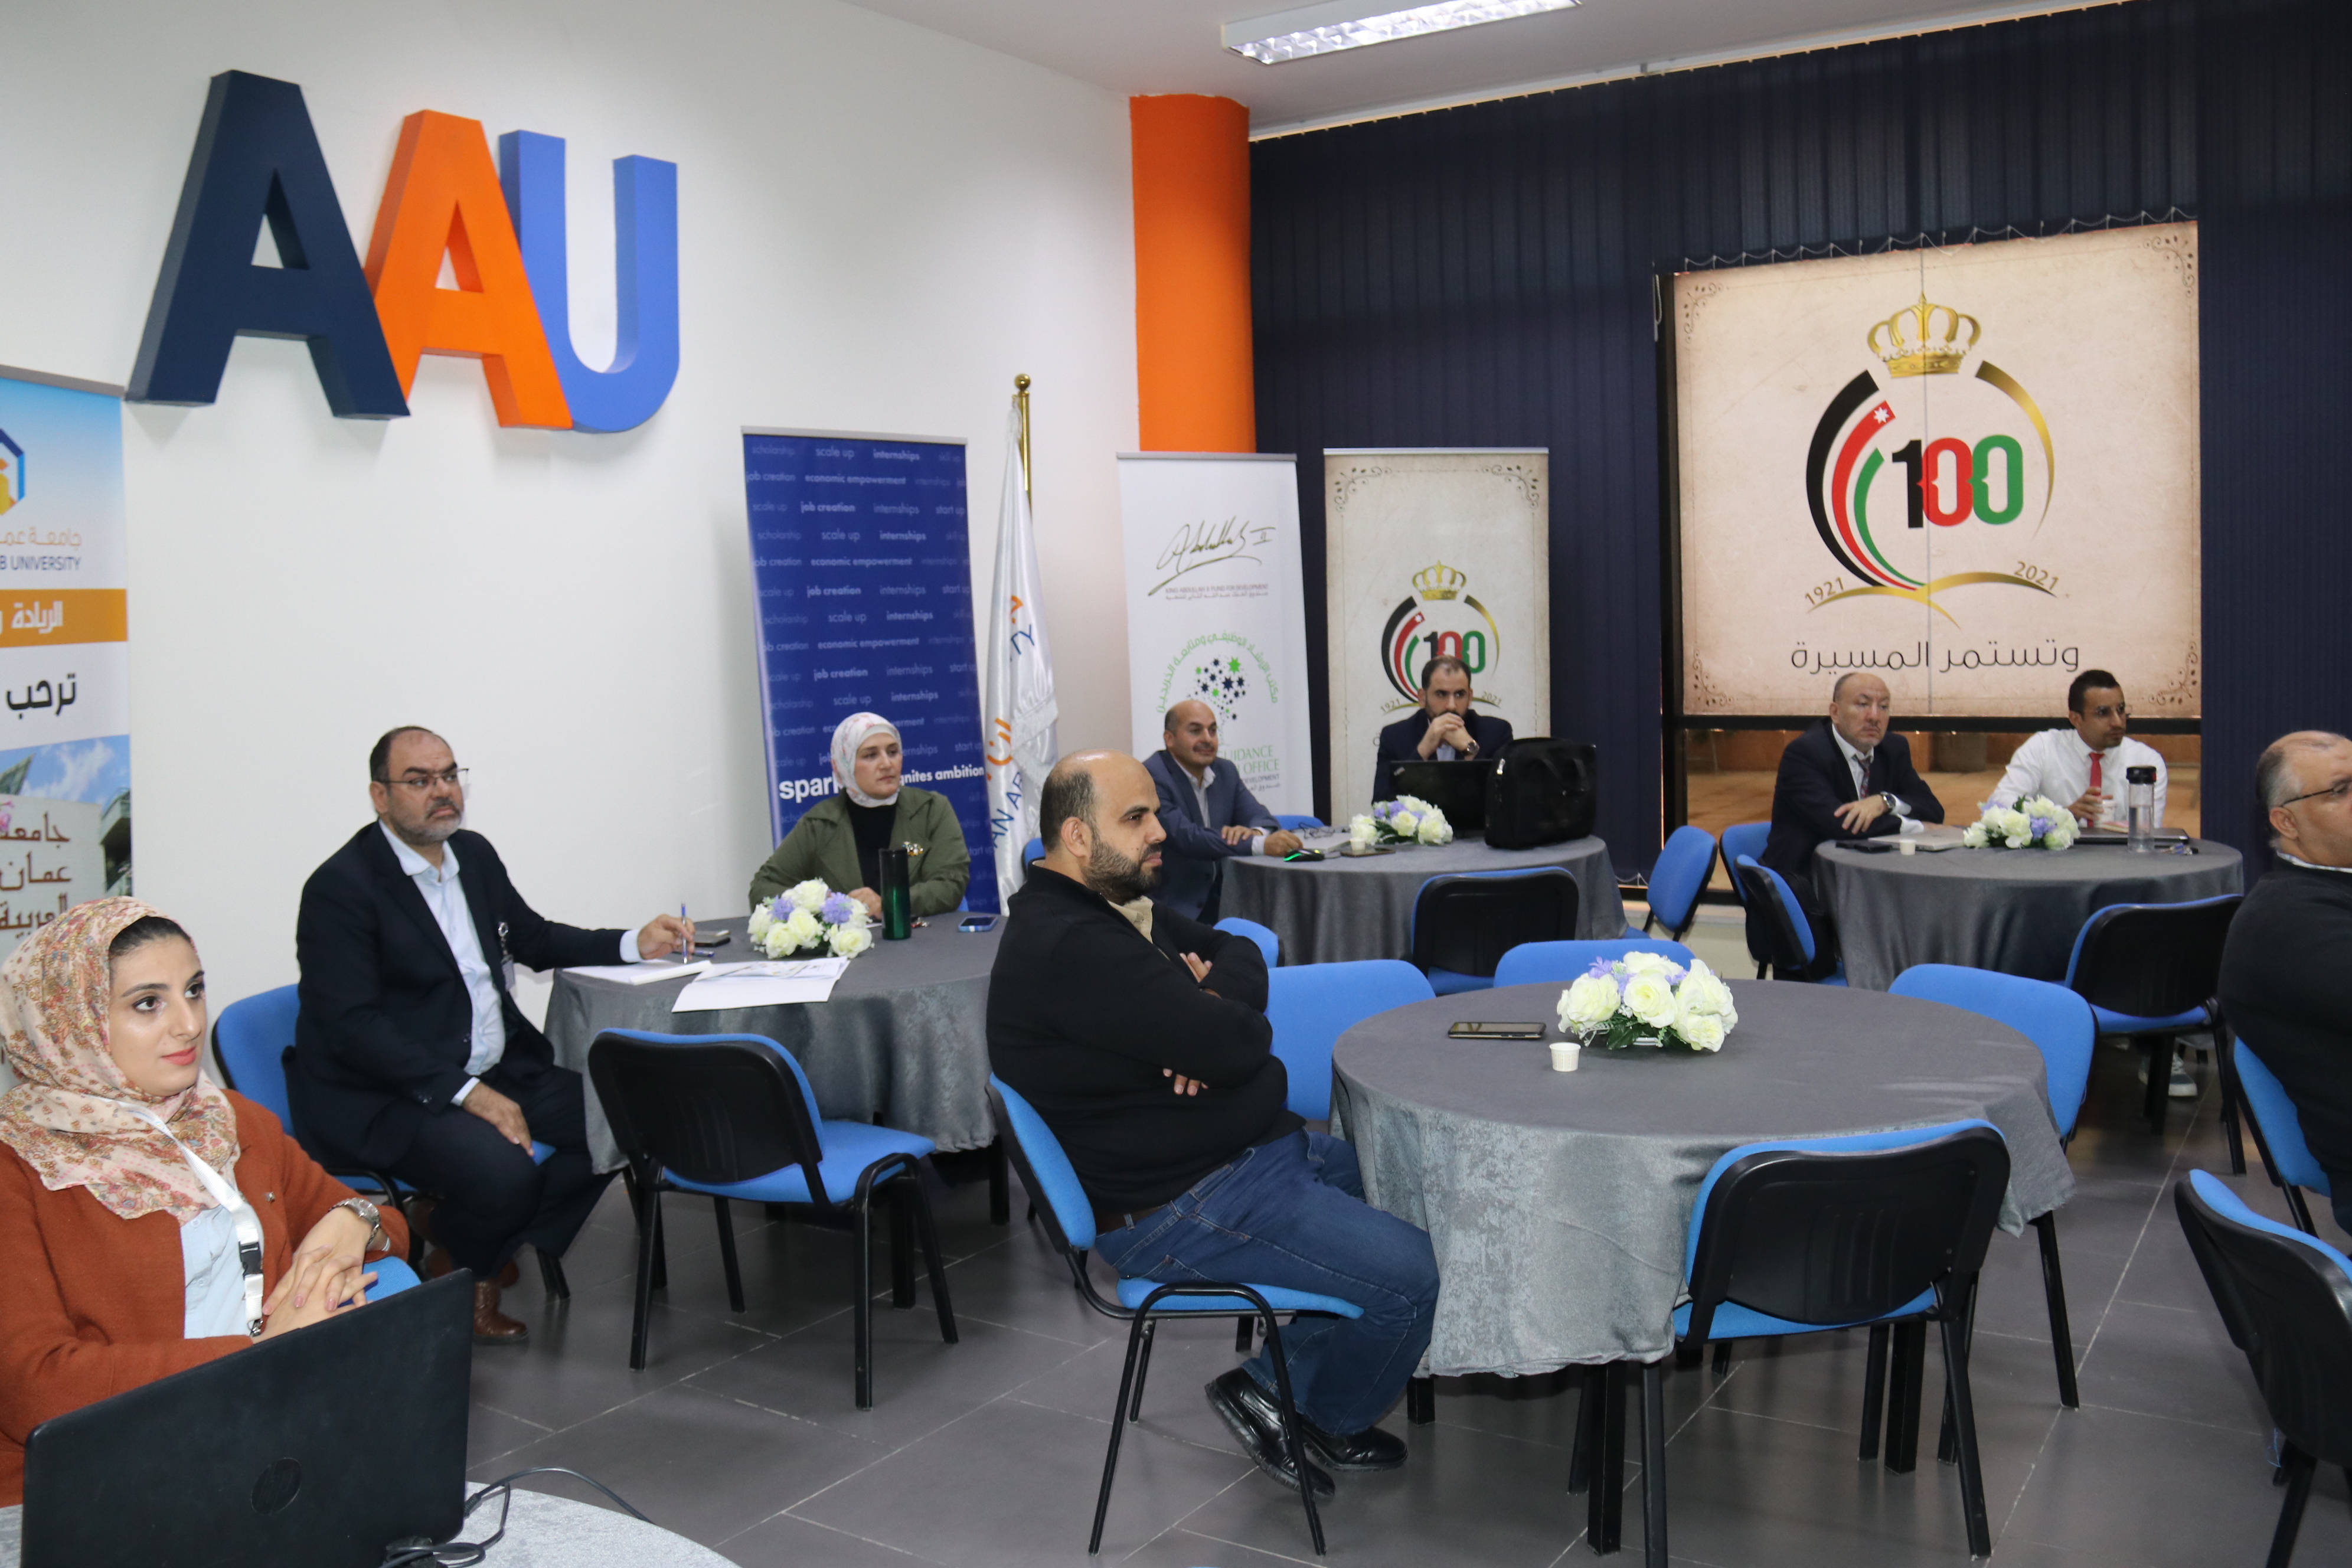 برنامج تدريبي مشترك بين "عمان العربية" ومنظمة سبارك حول خلق القيمة المضافة4